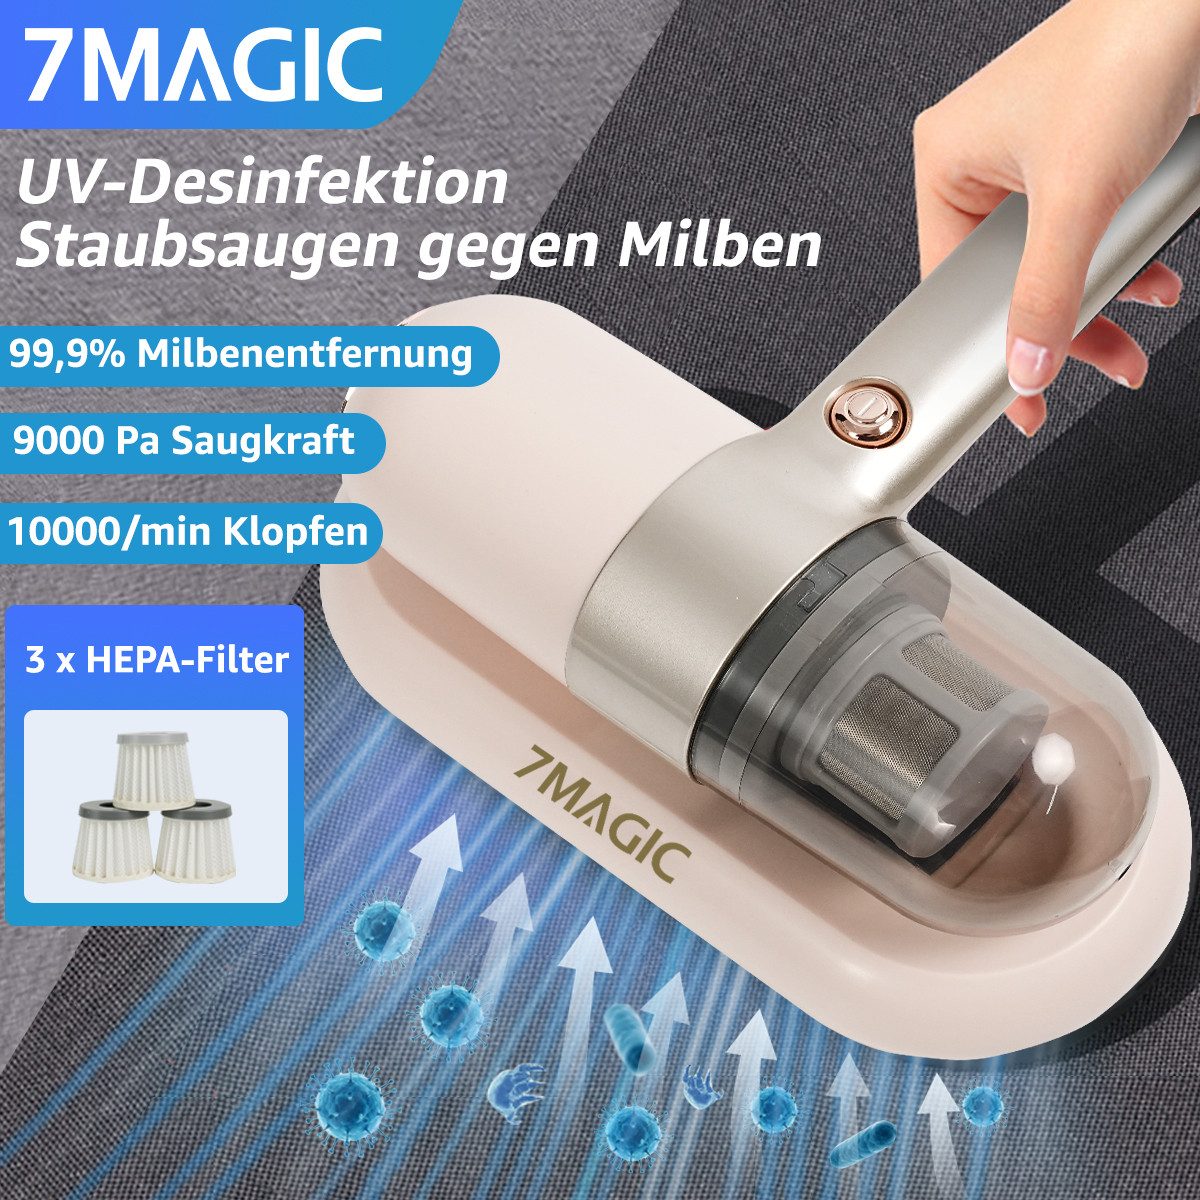 7MAGIC Matratzenreinigungsgerät, Milbensauger für Matratzen, Milbenstaubsauger mit UV Licht, Klopf-Funktion, Akku-Milbensauger